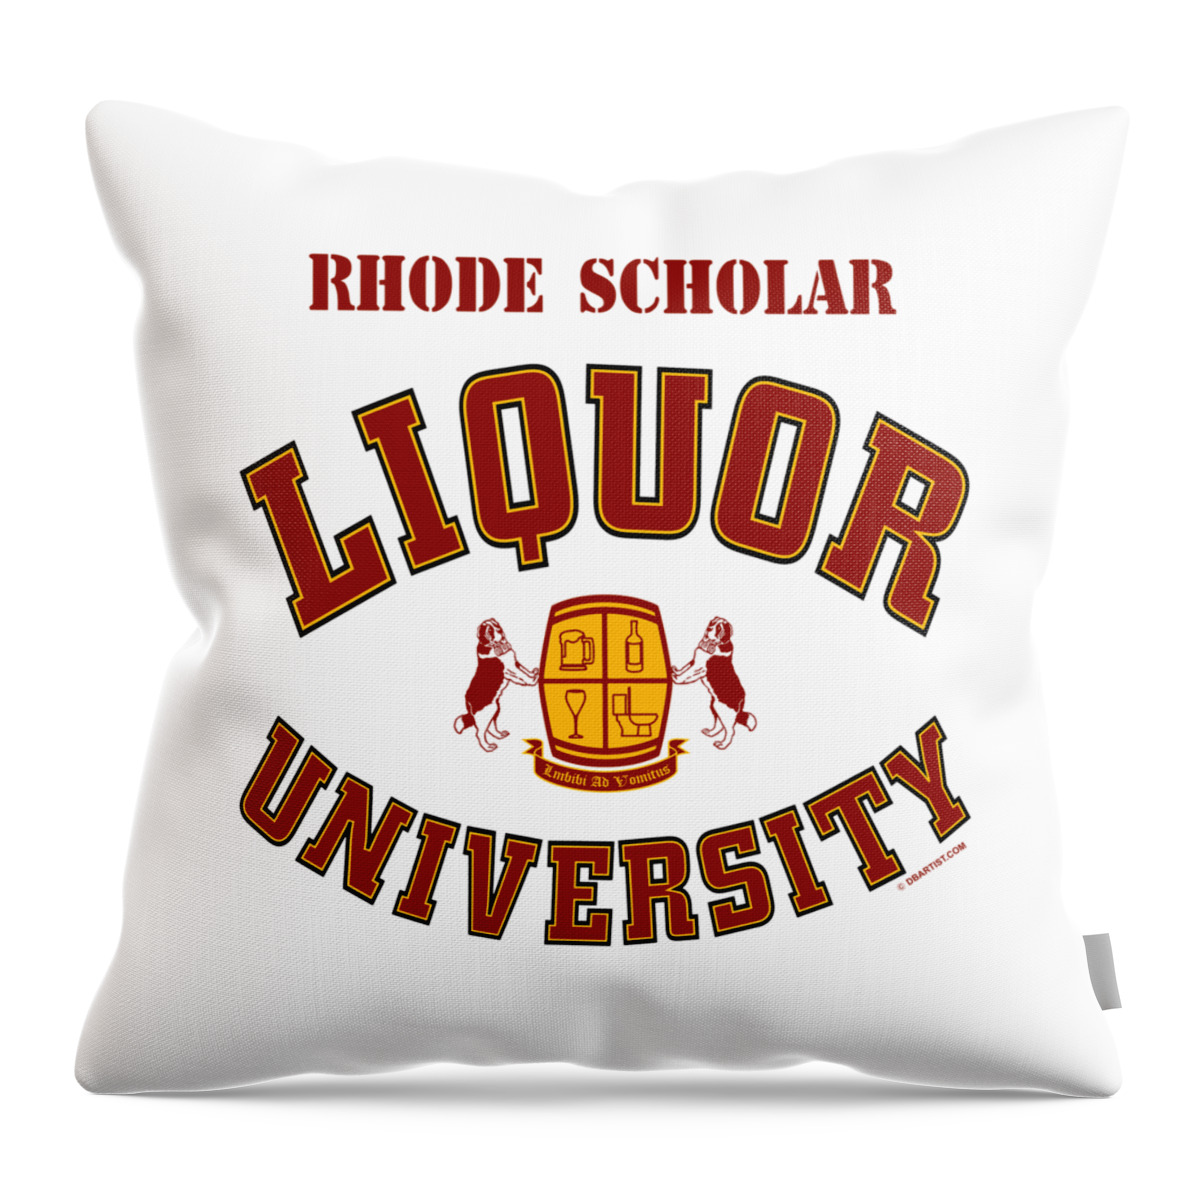 Liquor U Throw Pillow featuring the digital art Liquor University Rhode Scholar by DB Artist